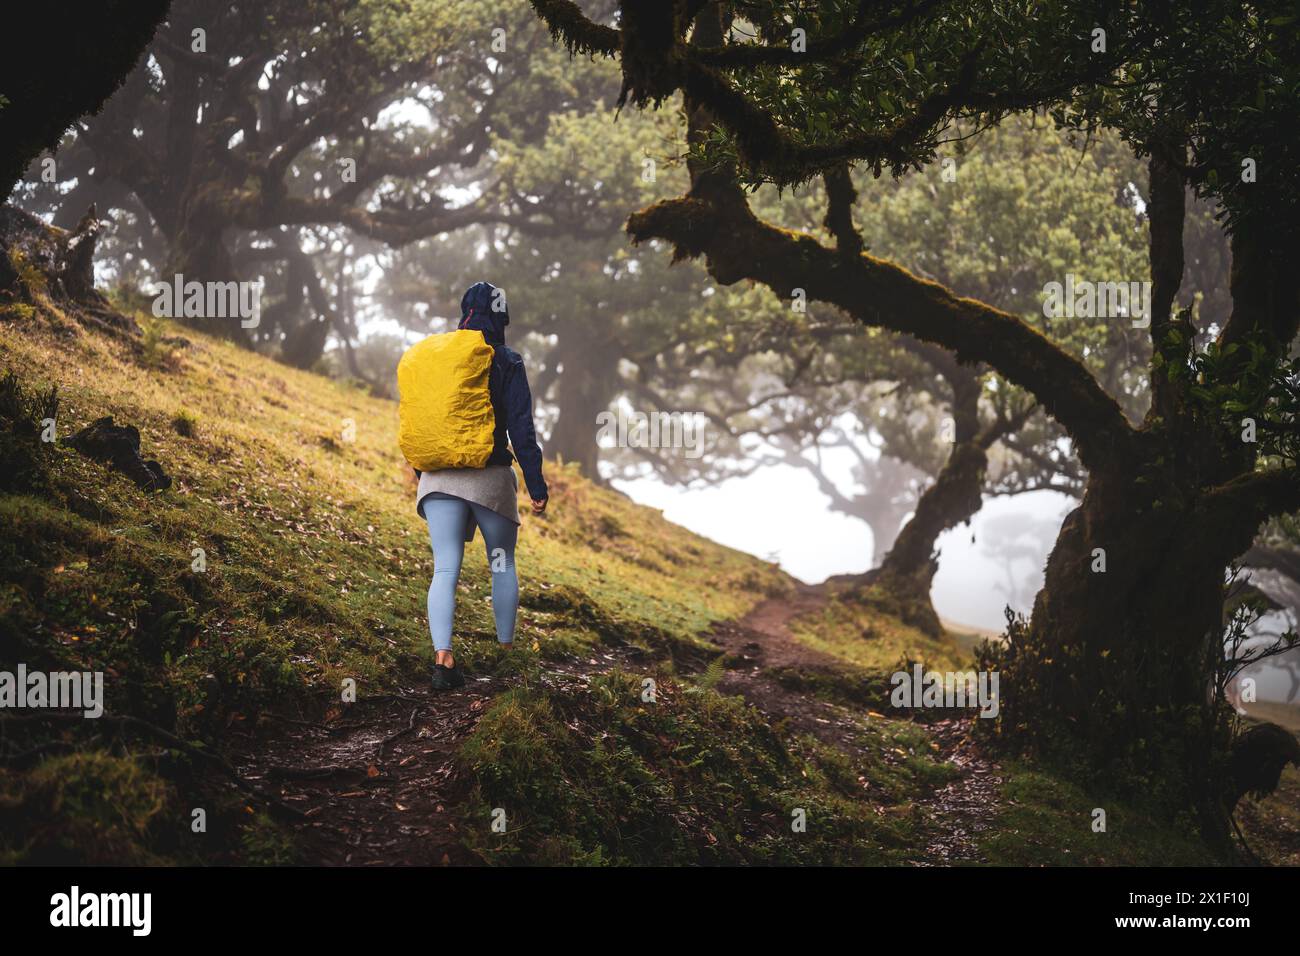 Beschreibung: Rückansicht eines Rucksacktouristen in regenfester Kleidung, der auf einem Wanderweg in einem mystischen Nebelwald mit riesigen Lorbeerbäumen spaziert. Fanal Forest, M Stockfoto